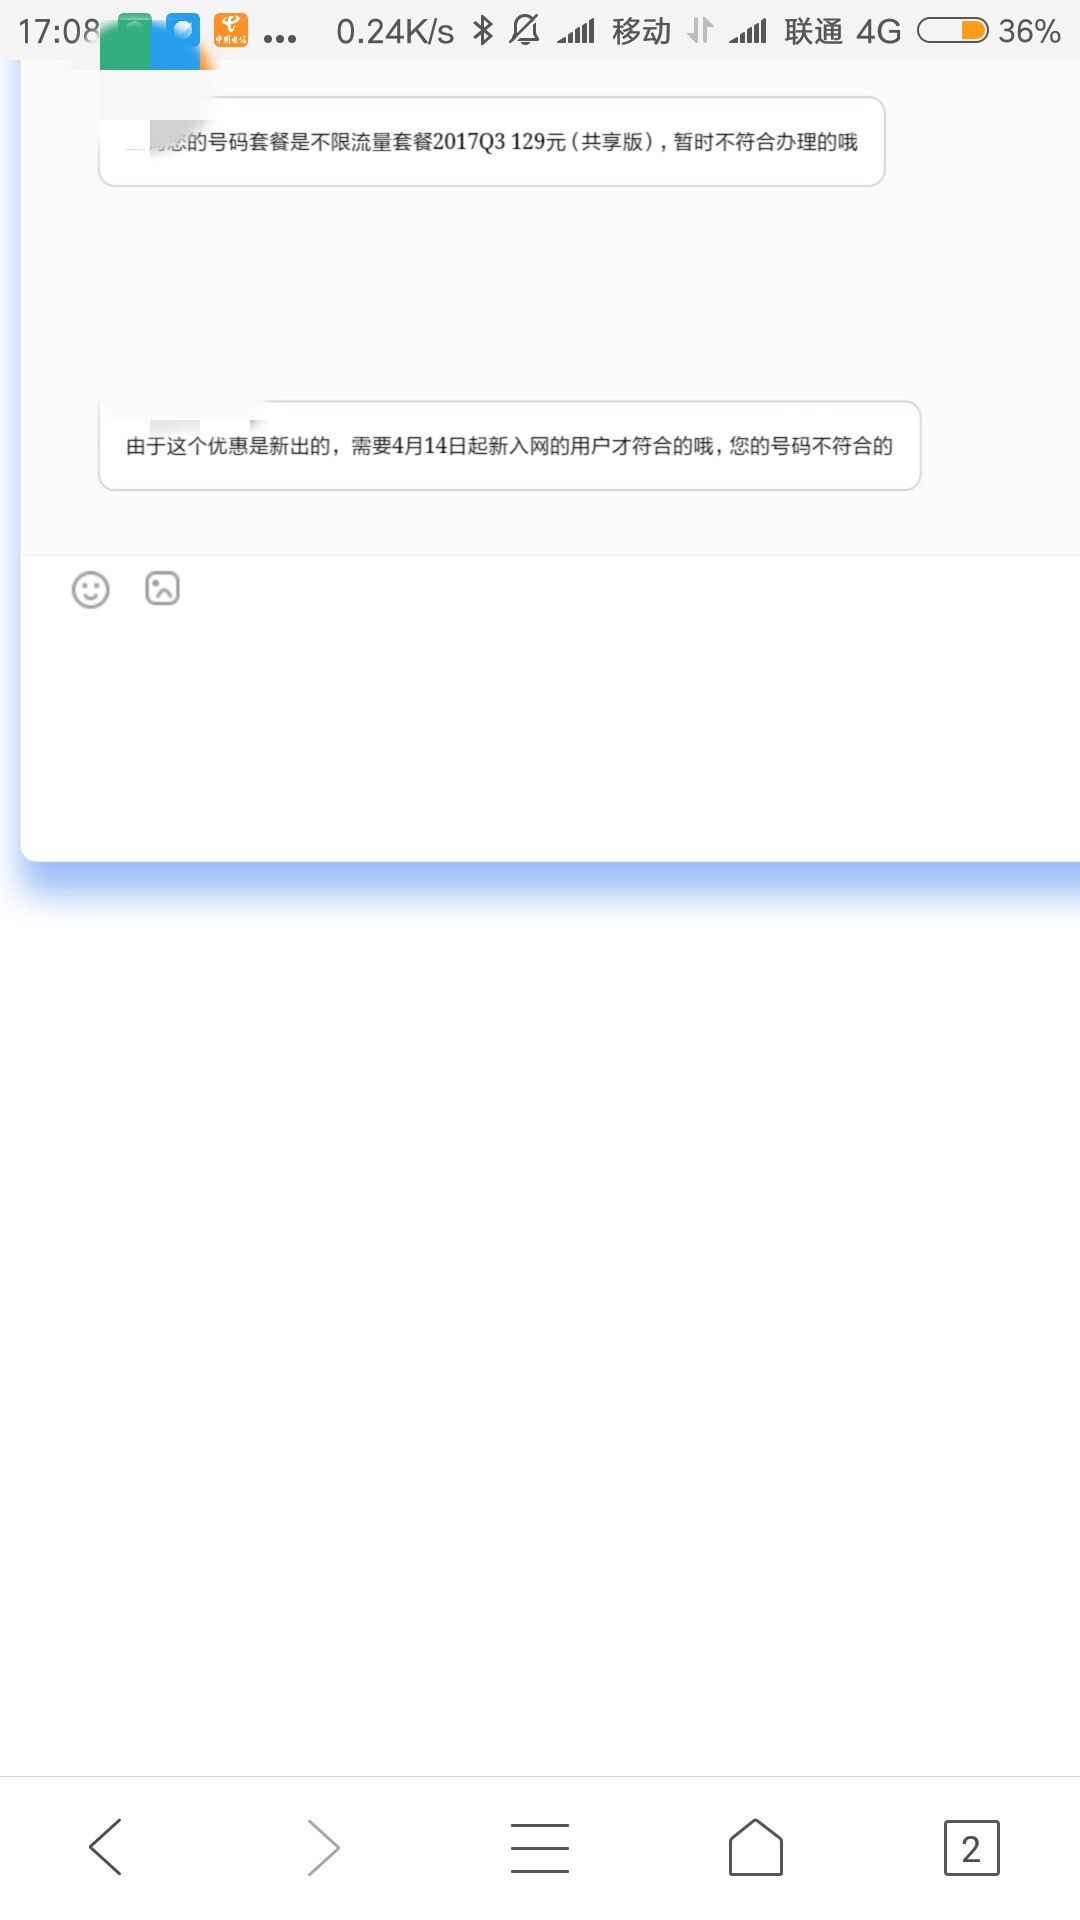 Screenshot_2018-04-19-17-08-24-877_com.tencent.mtt.png